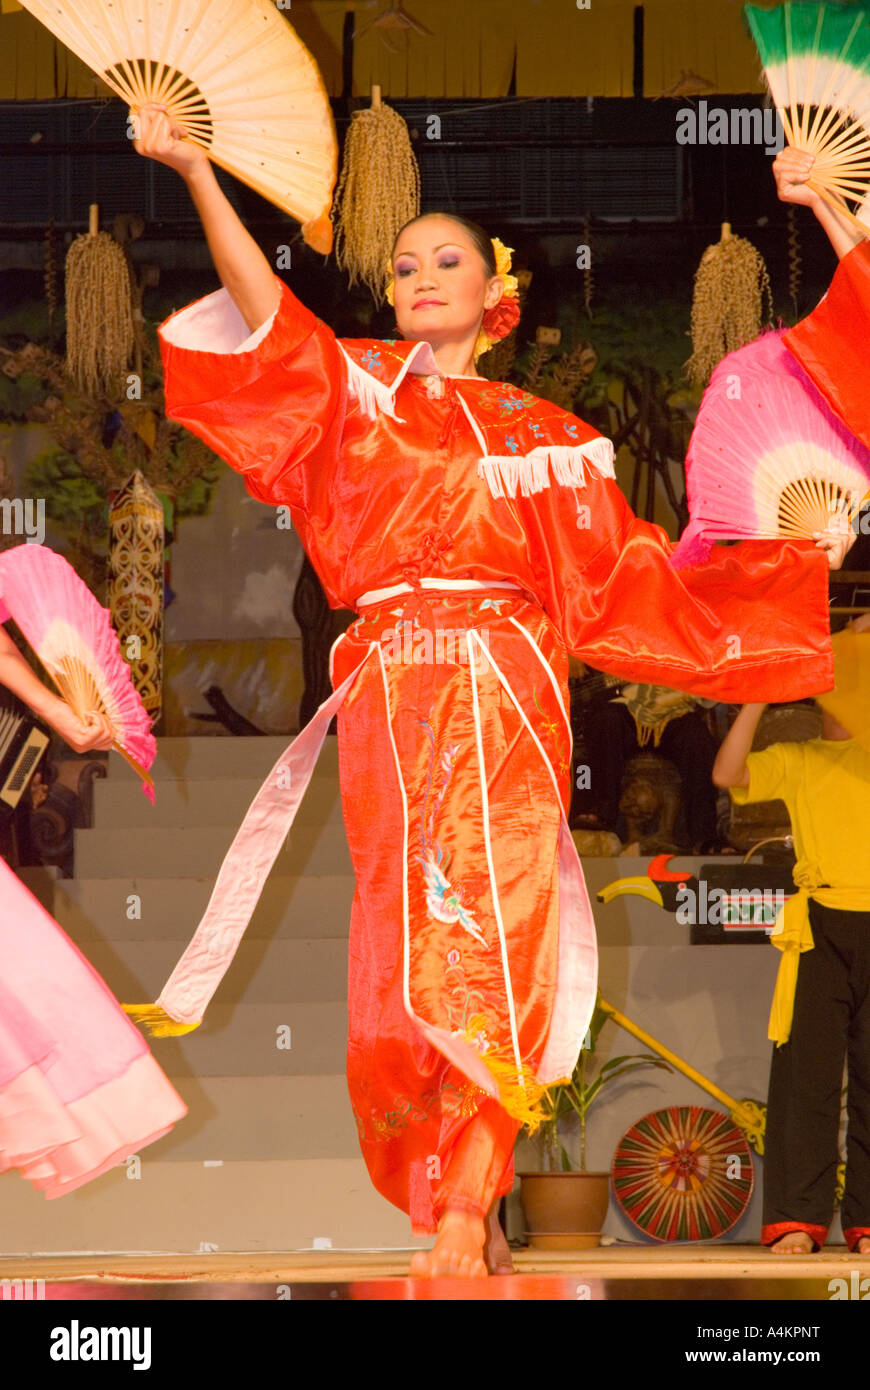 Esecutori al Sarawak centro culturale presente un programma di musica e danze tradizionali Foto Stock